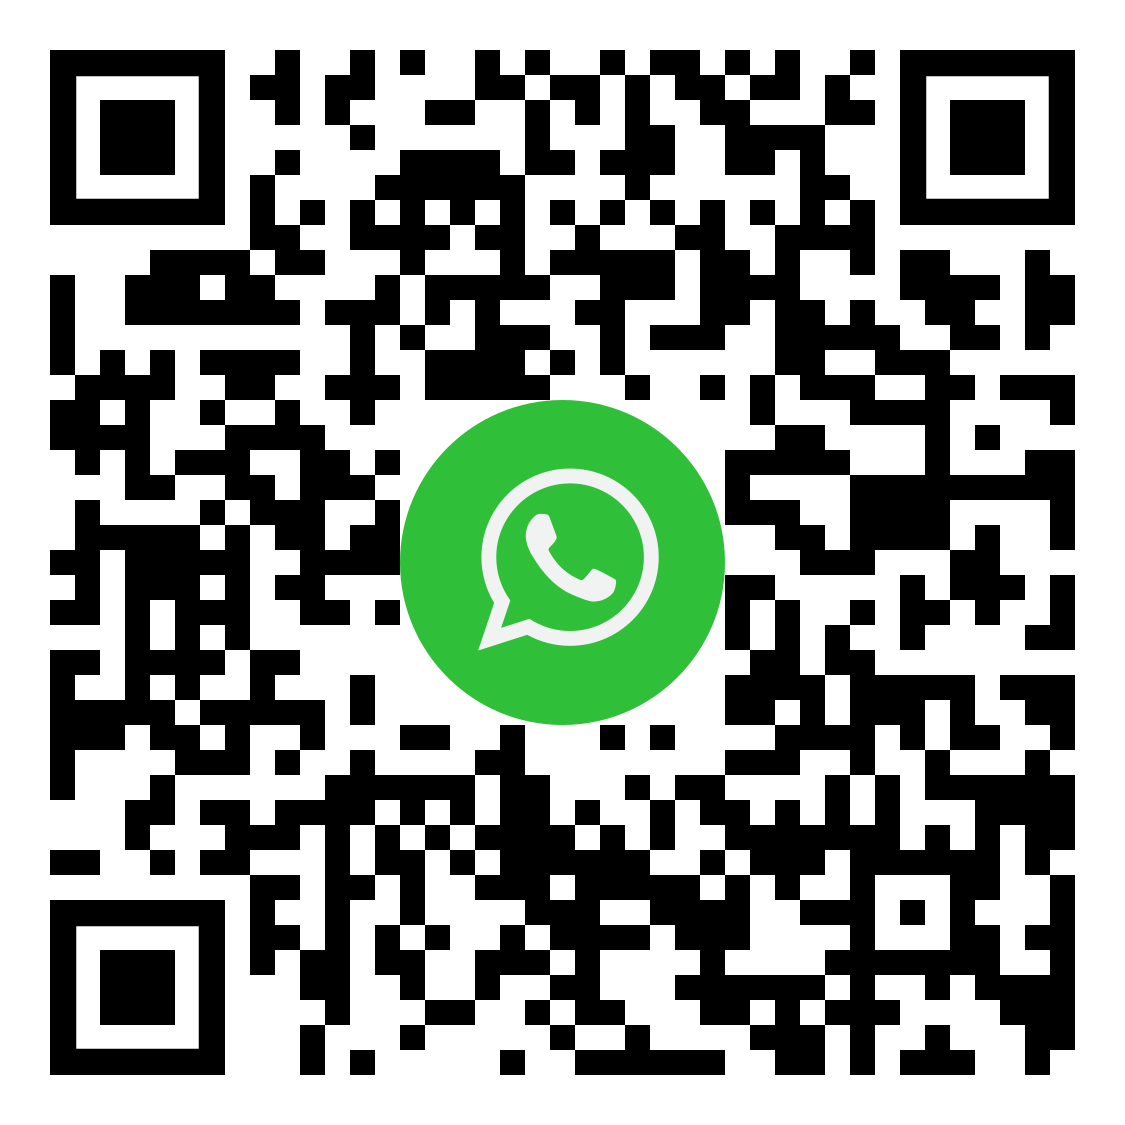 QR Whatsapp